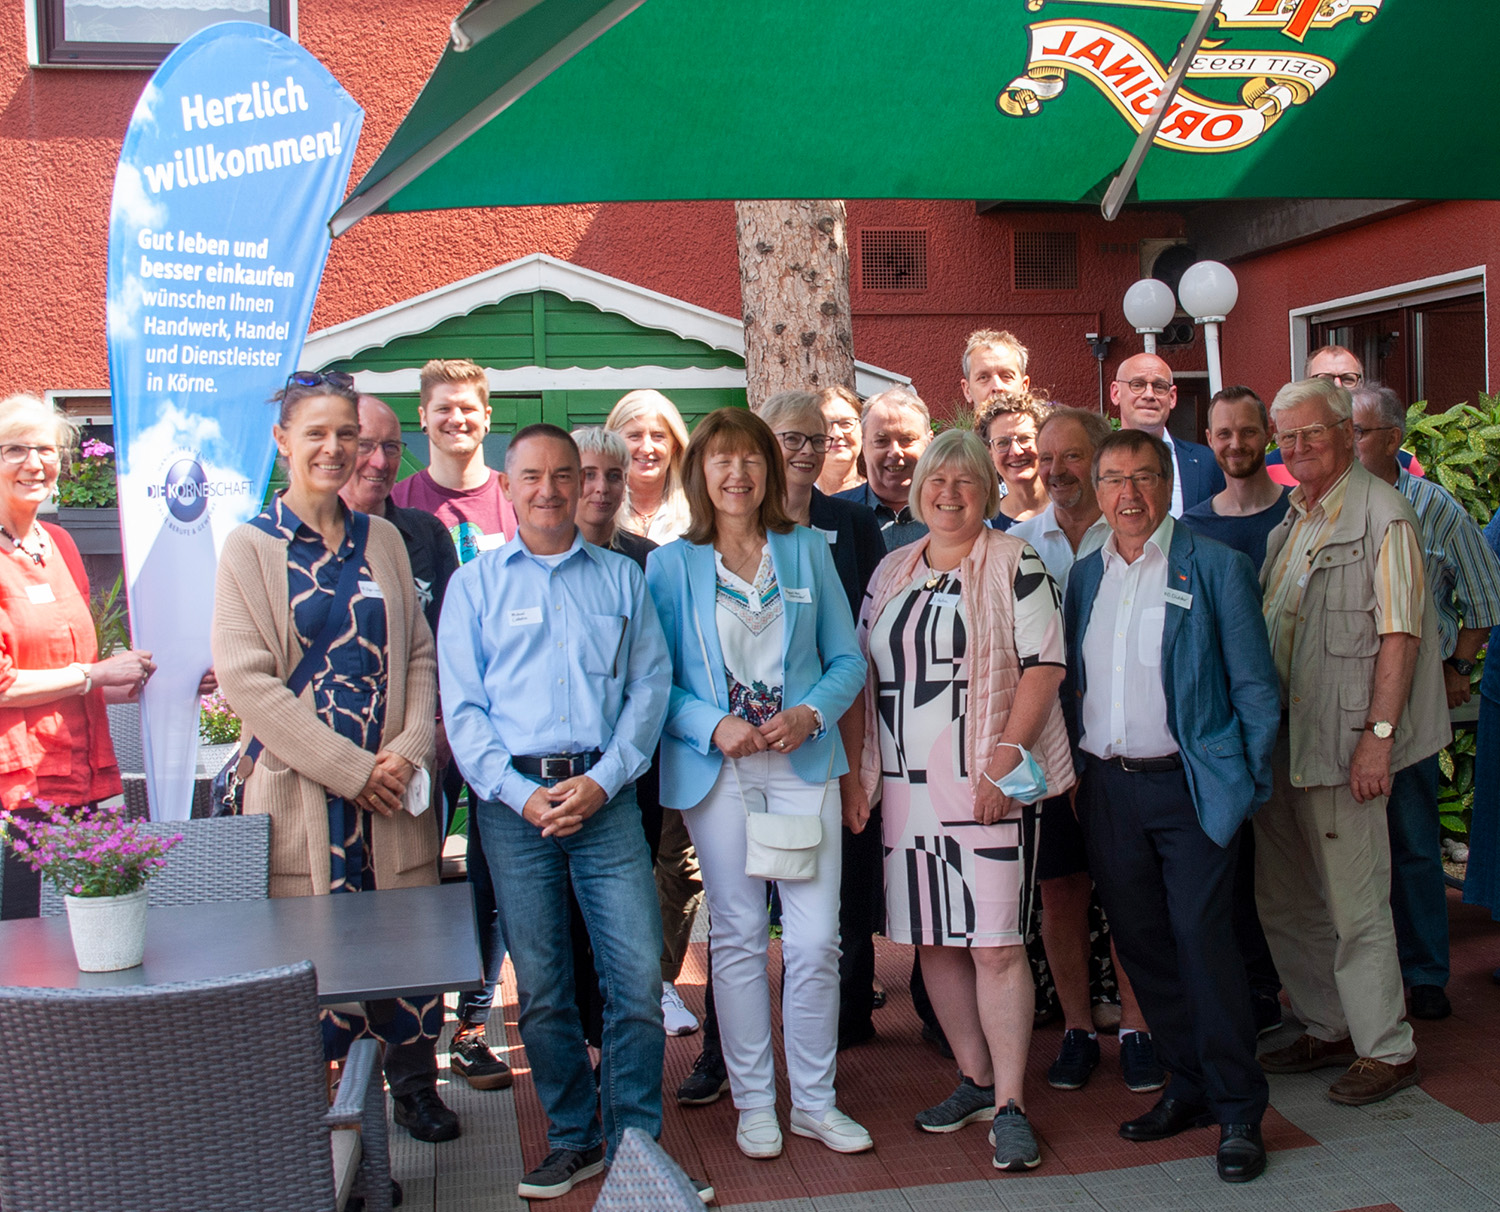 Verantwortliche und Mitglieder aller Körner Vereine und Institutionen waren zum traditionellen Treffen eingeladen (Foto: Rüdiger Beck)